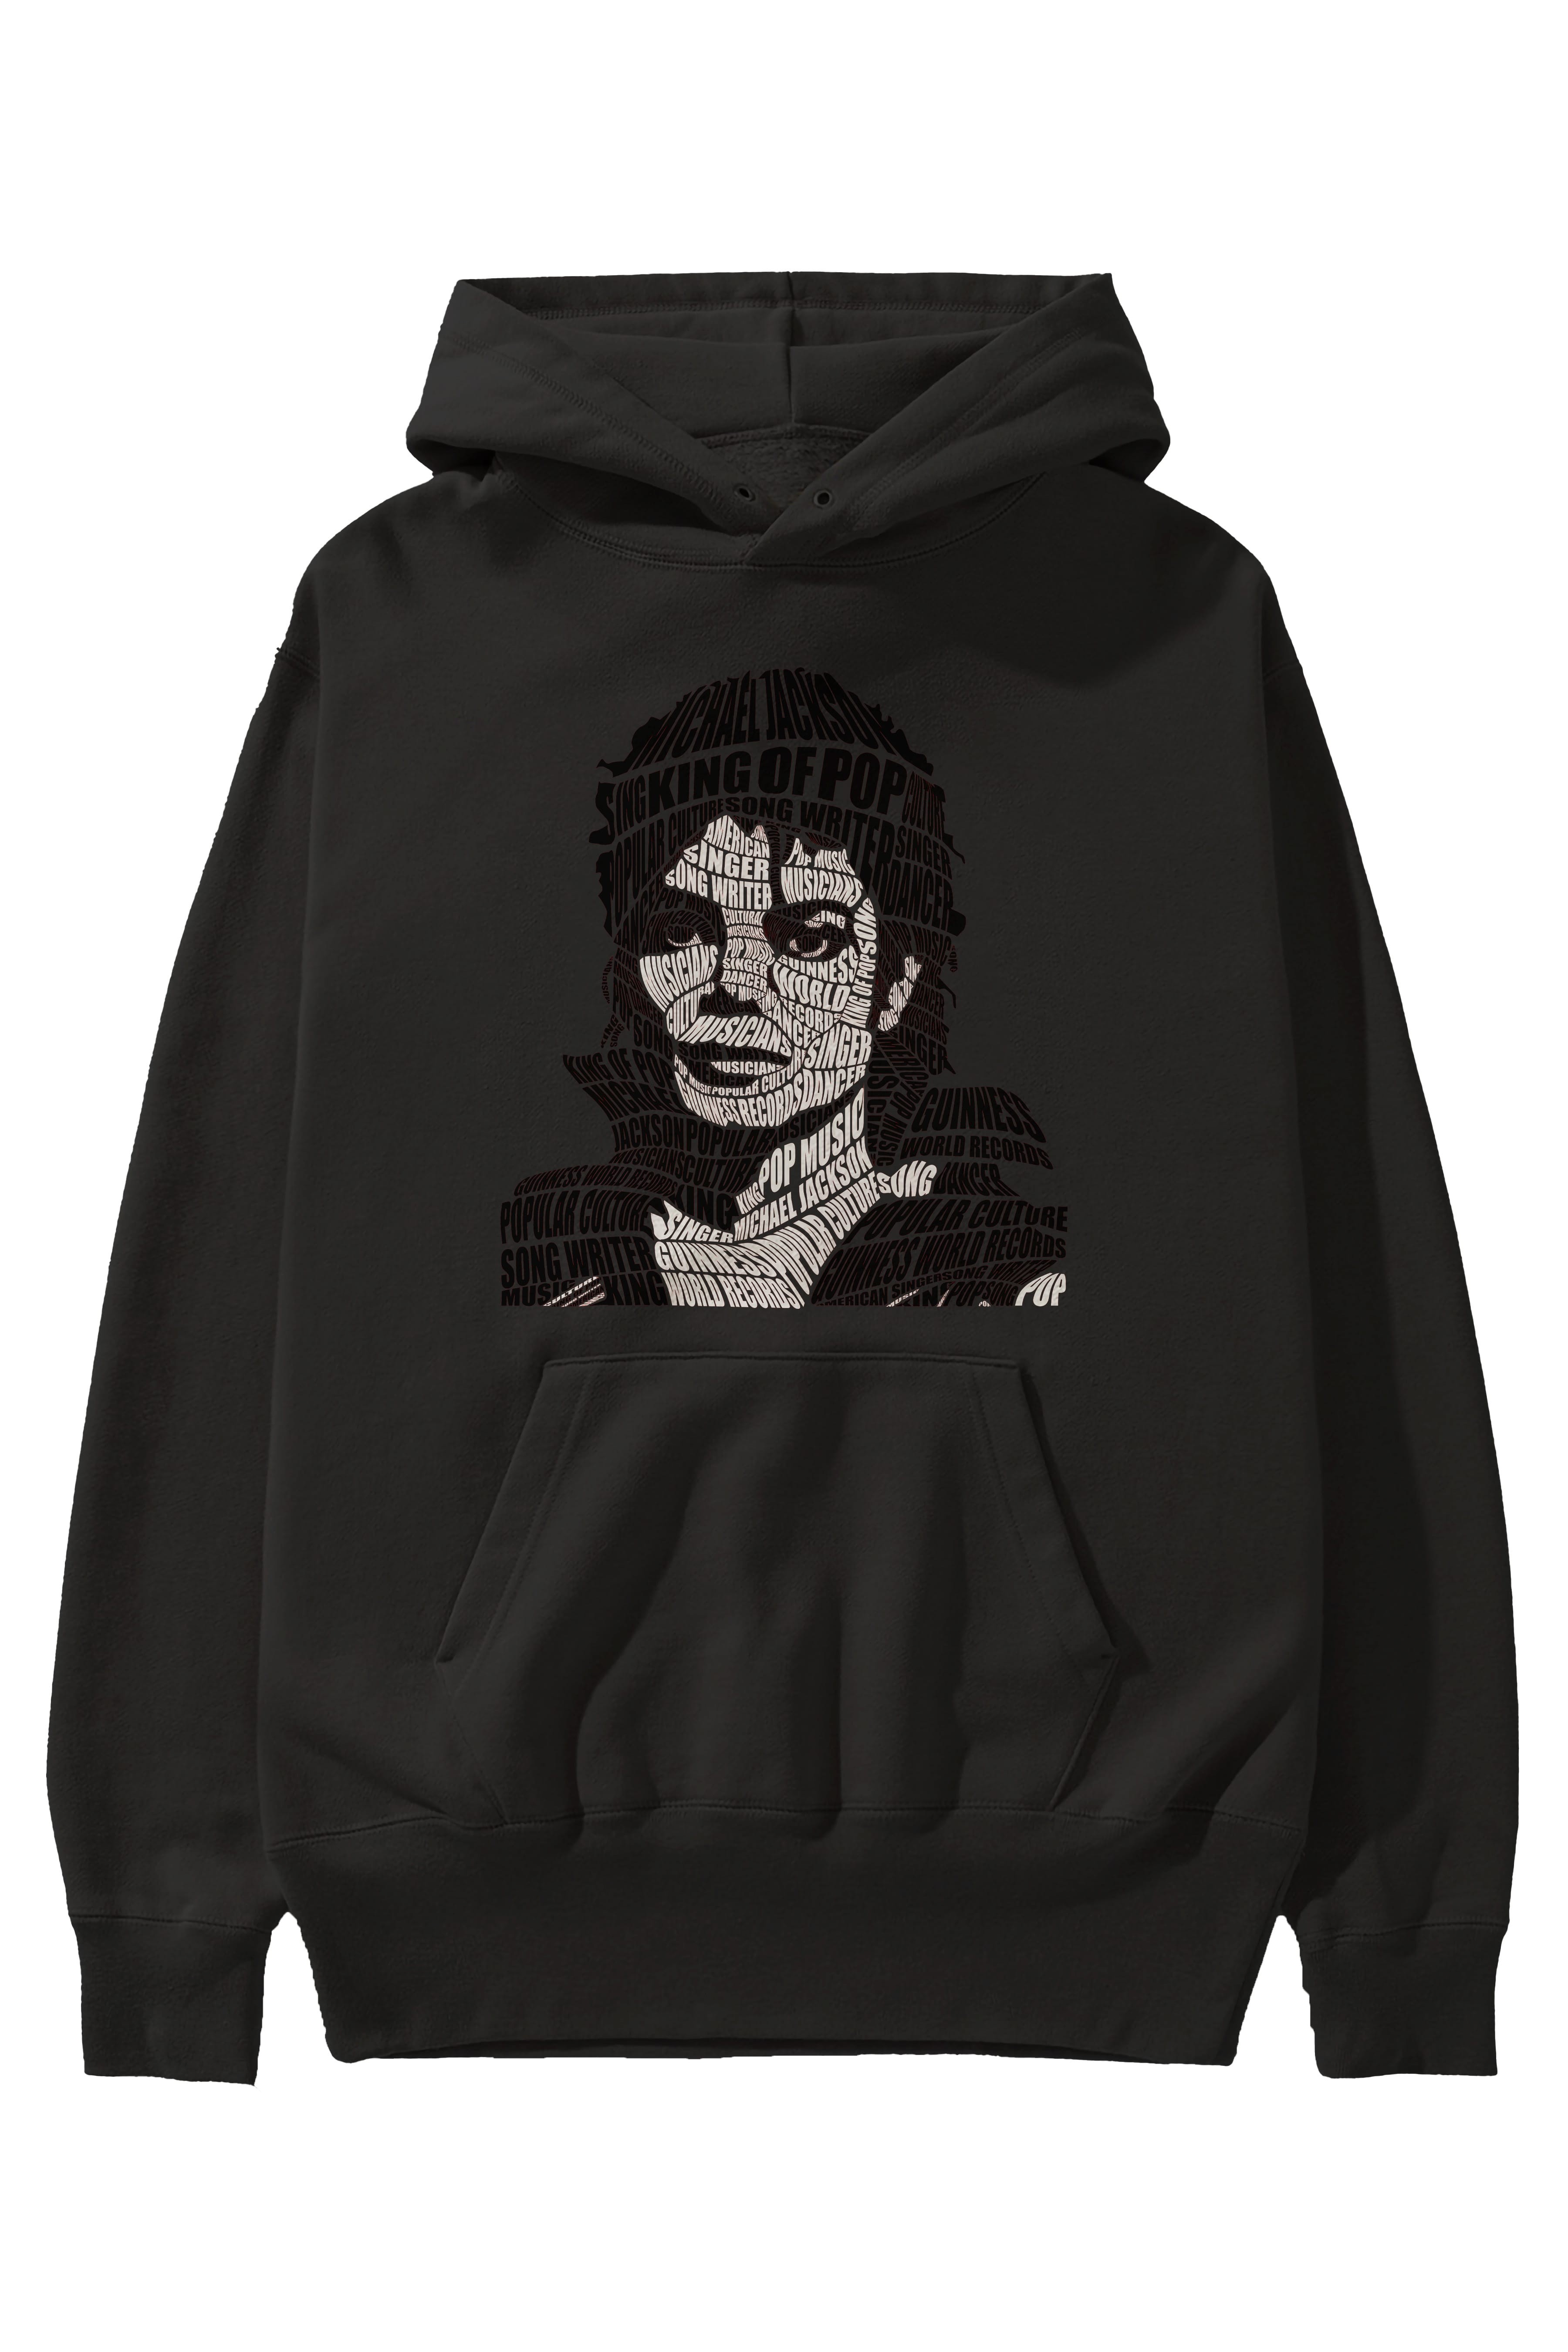 Michael Jackson Calligram Ön Baskılı Hoodie Oversize Kapüşonlu Sweatshirt Erkek Kadın Unisex